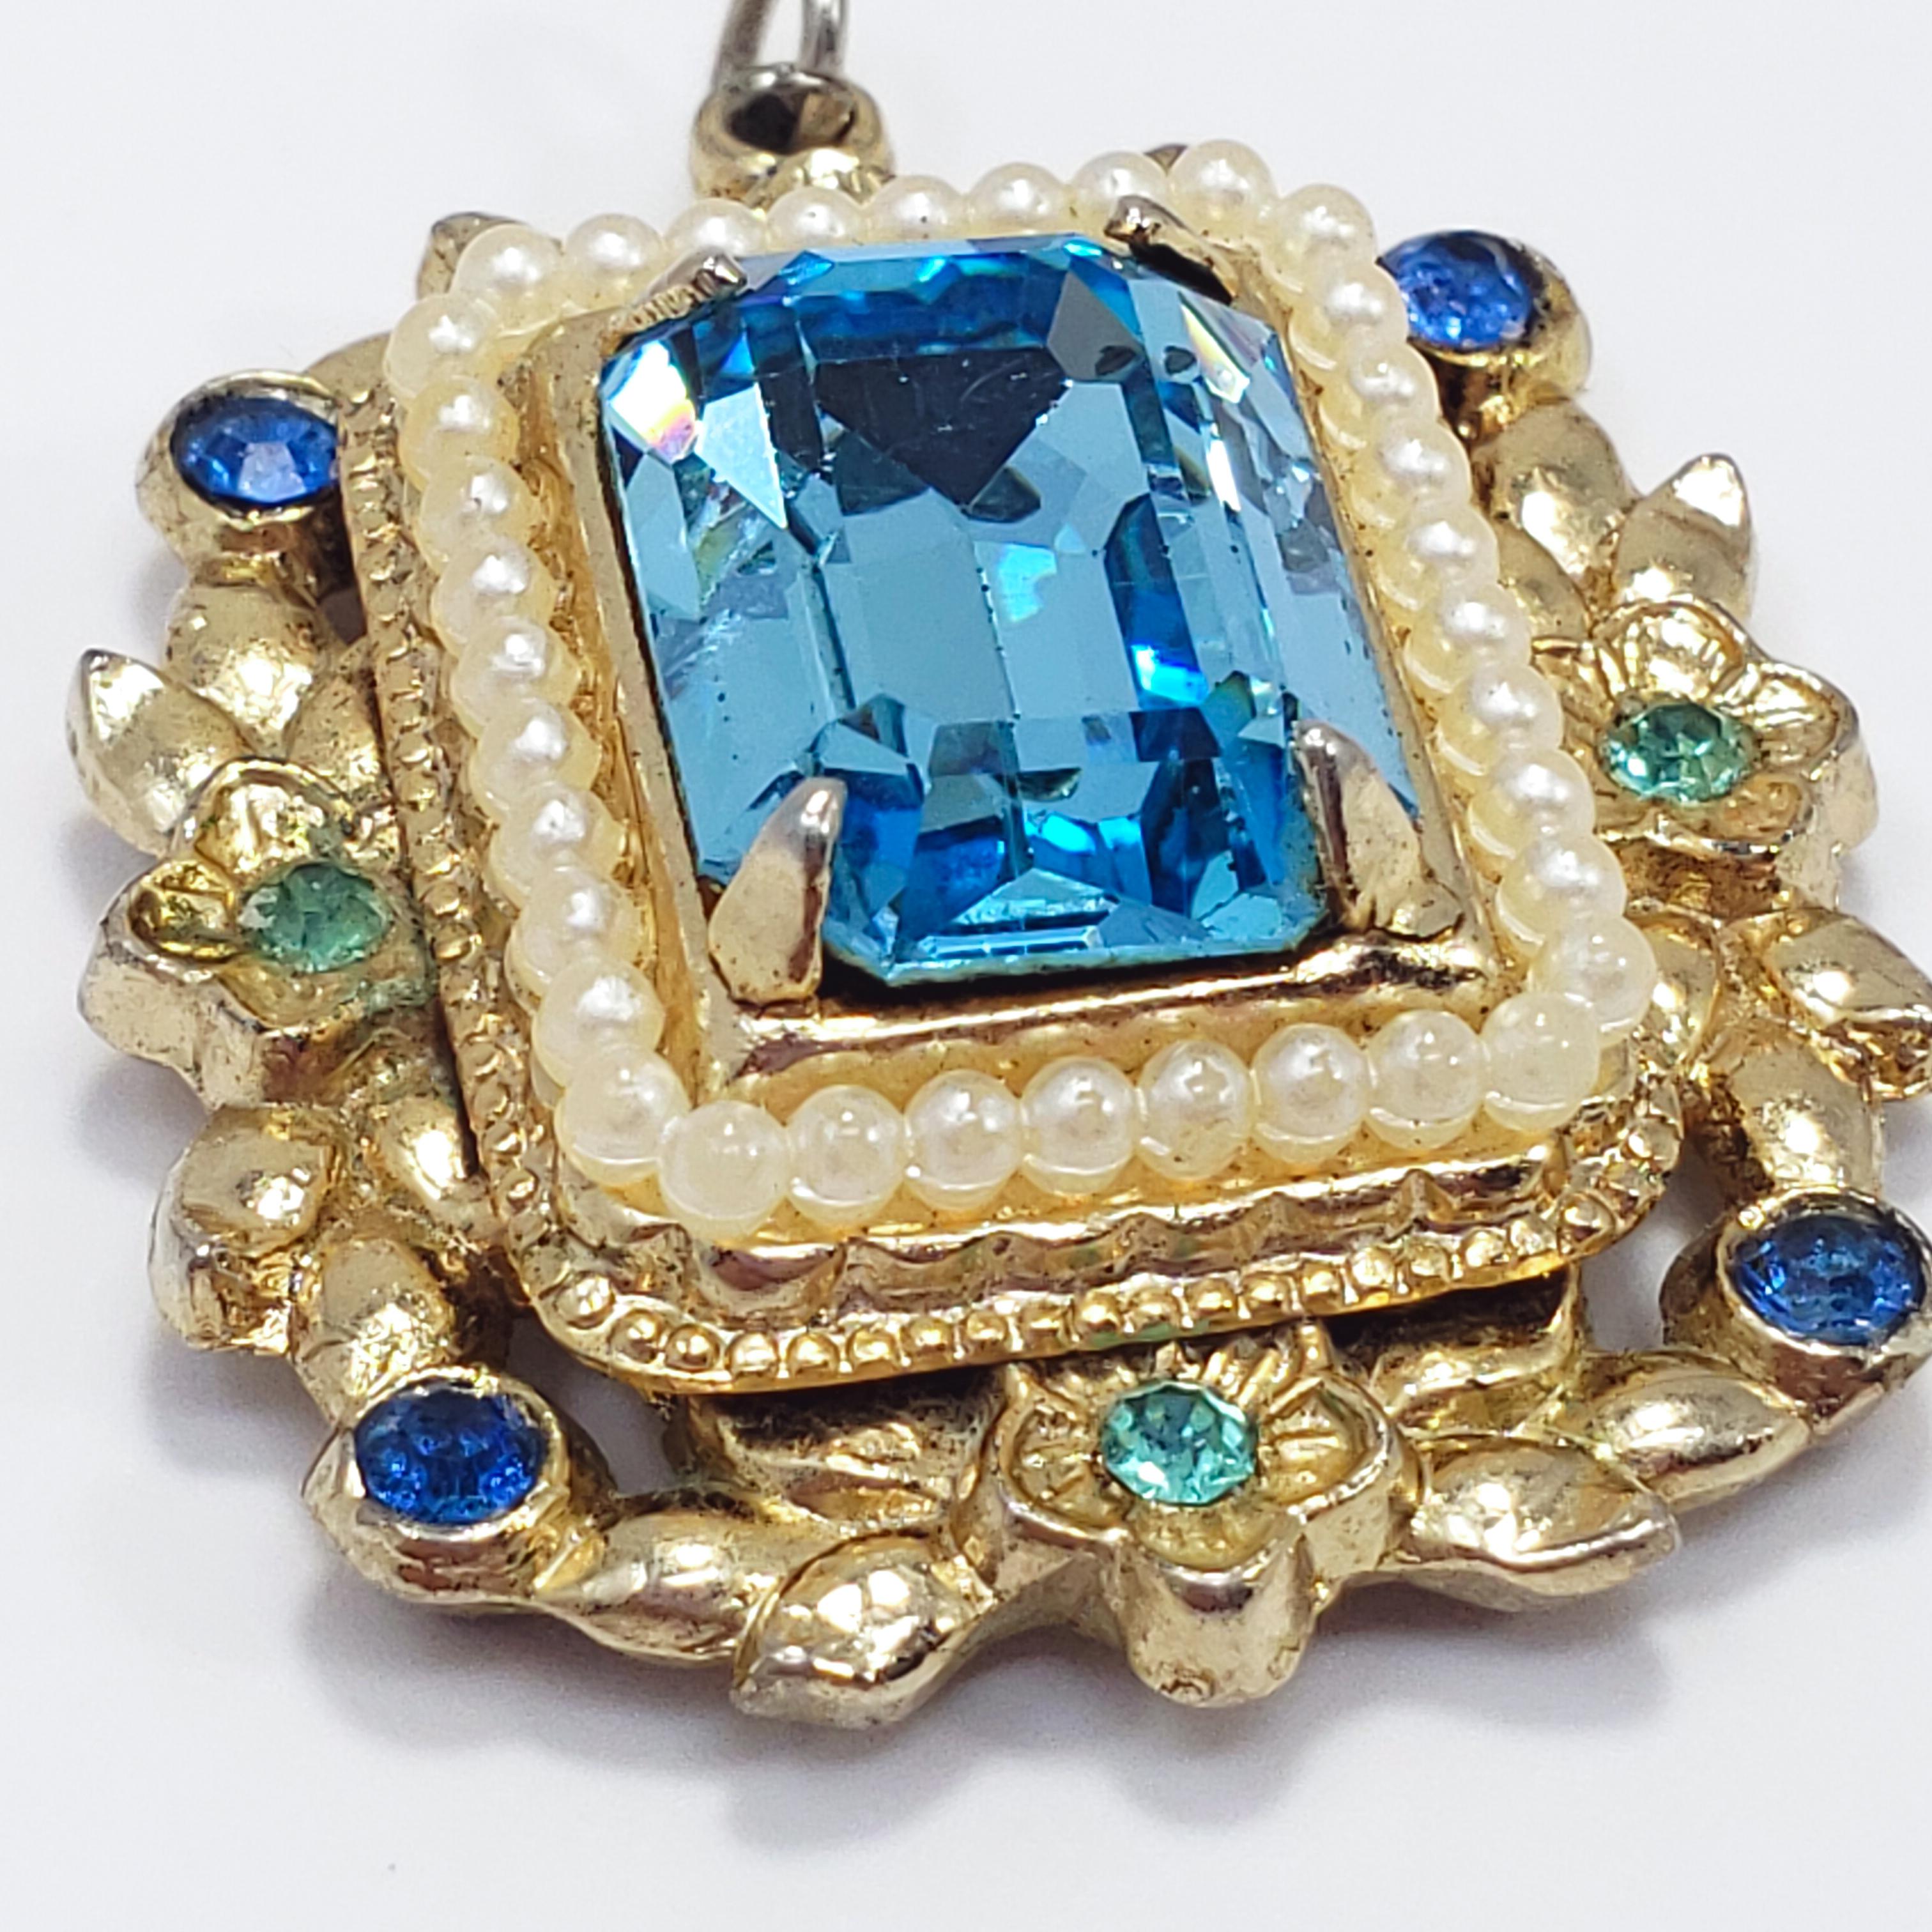 Retro Coro Aquamarine Crystal & Faux Pearl Pendant in Gold, Circa Mid 1900s